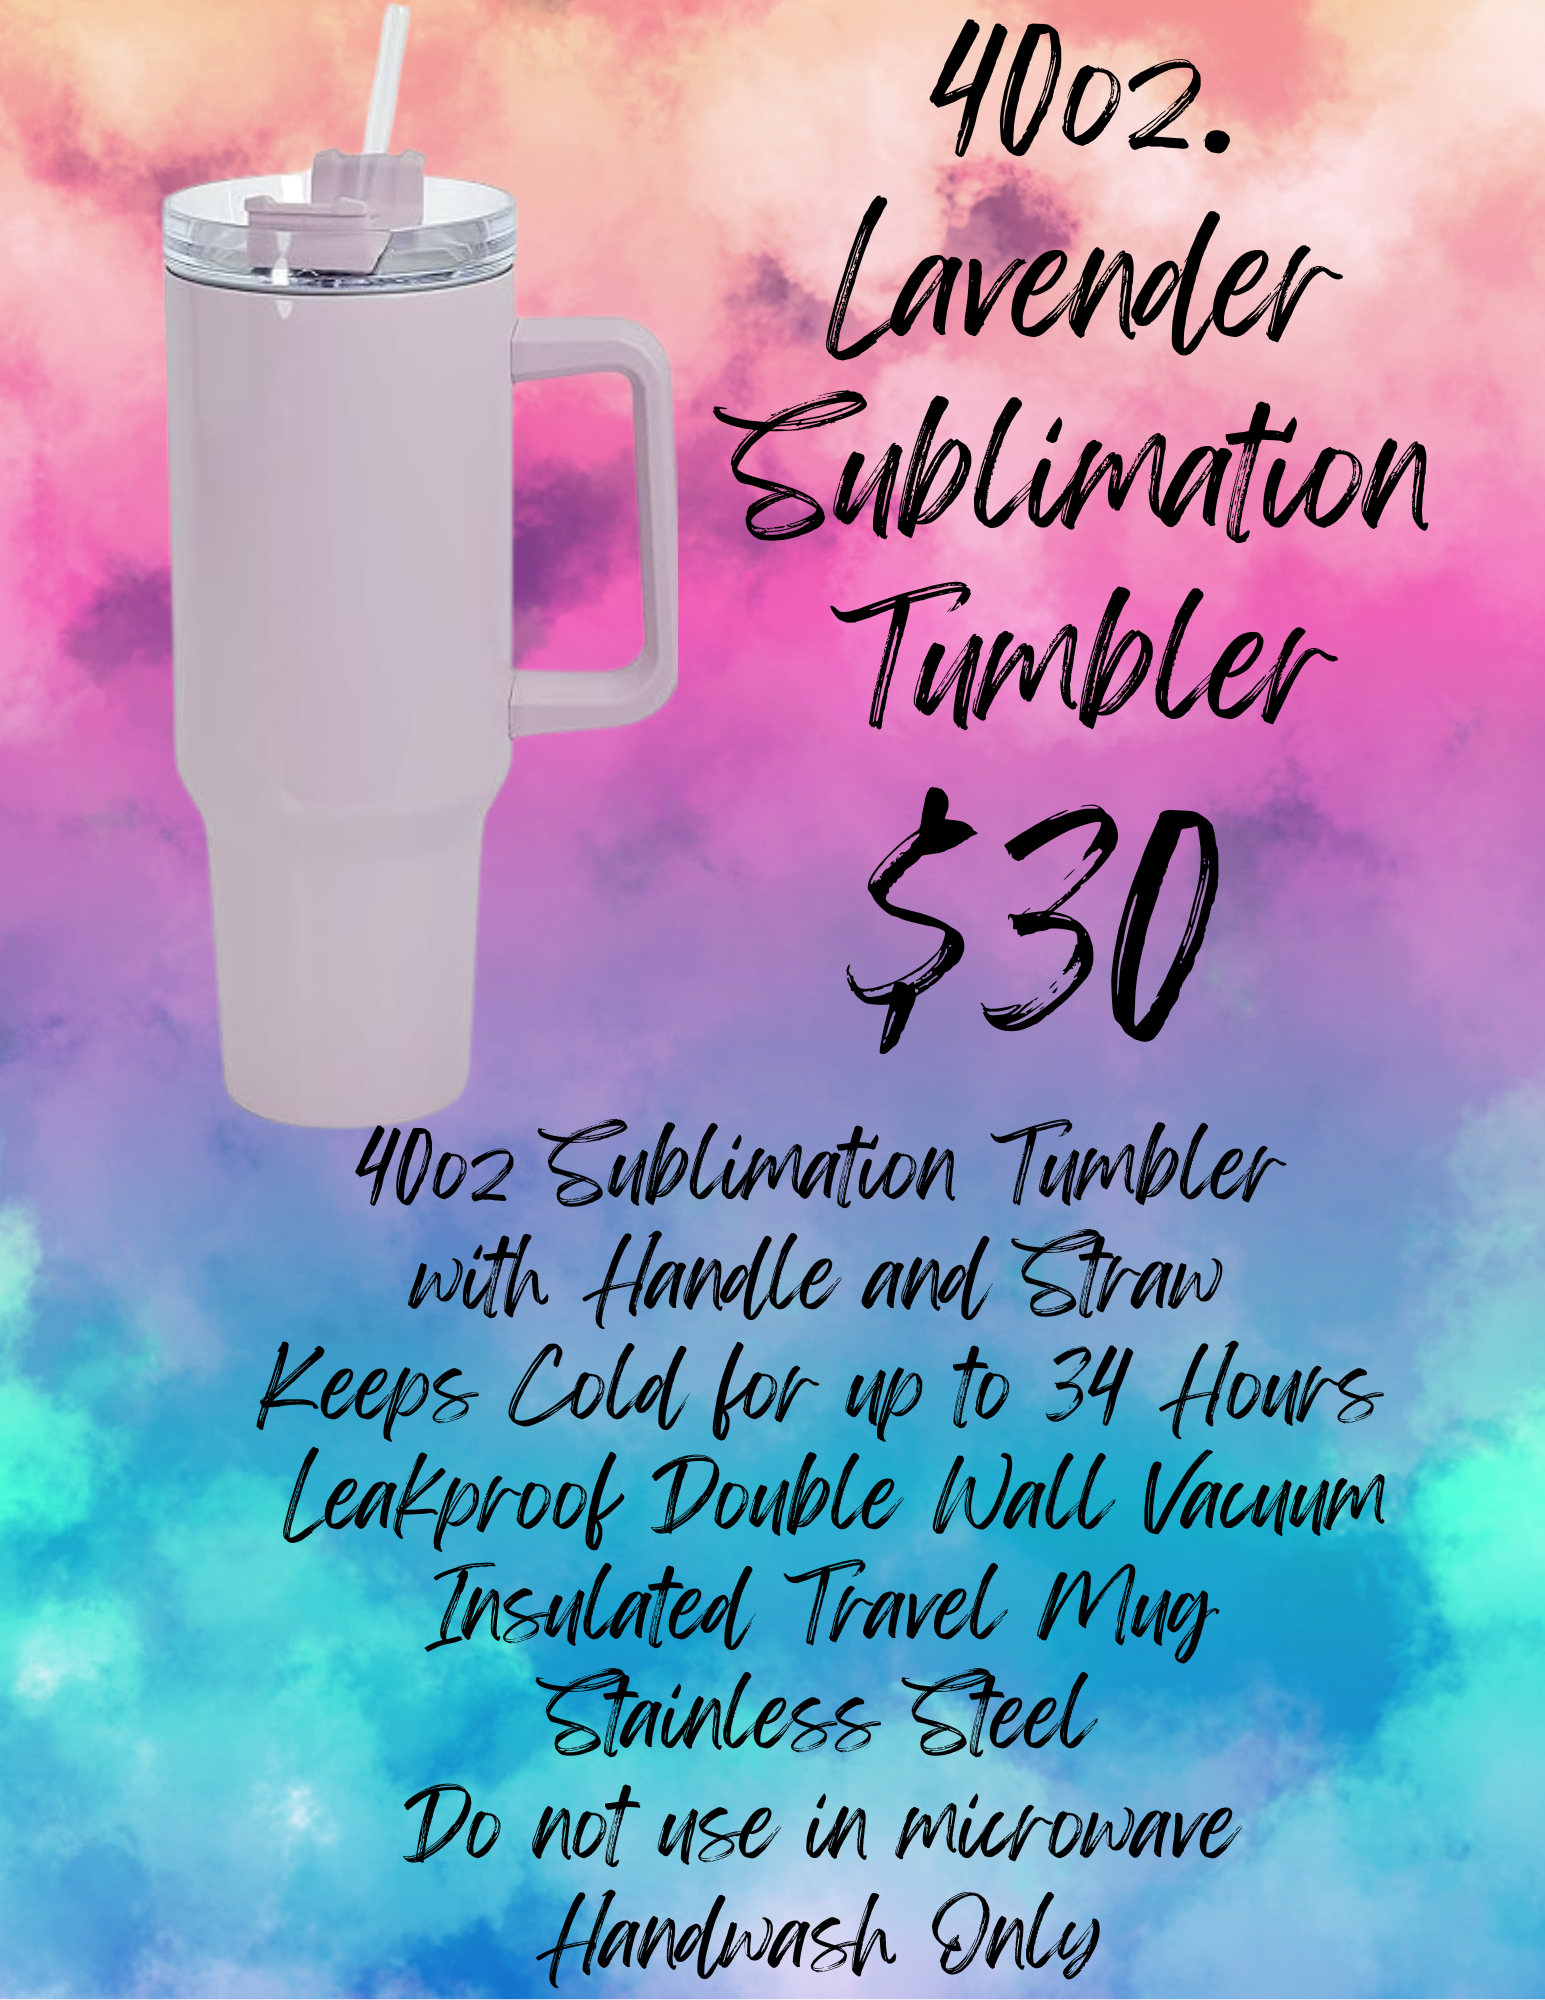 40oz Lavender Tumbler (Sublimation)